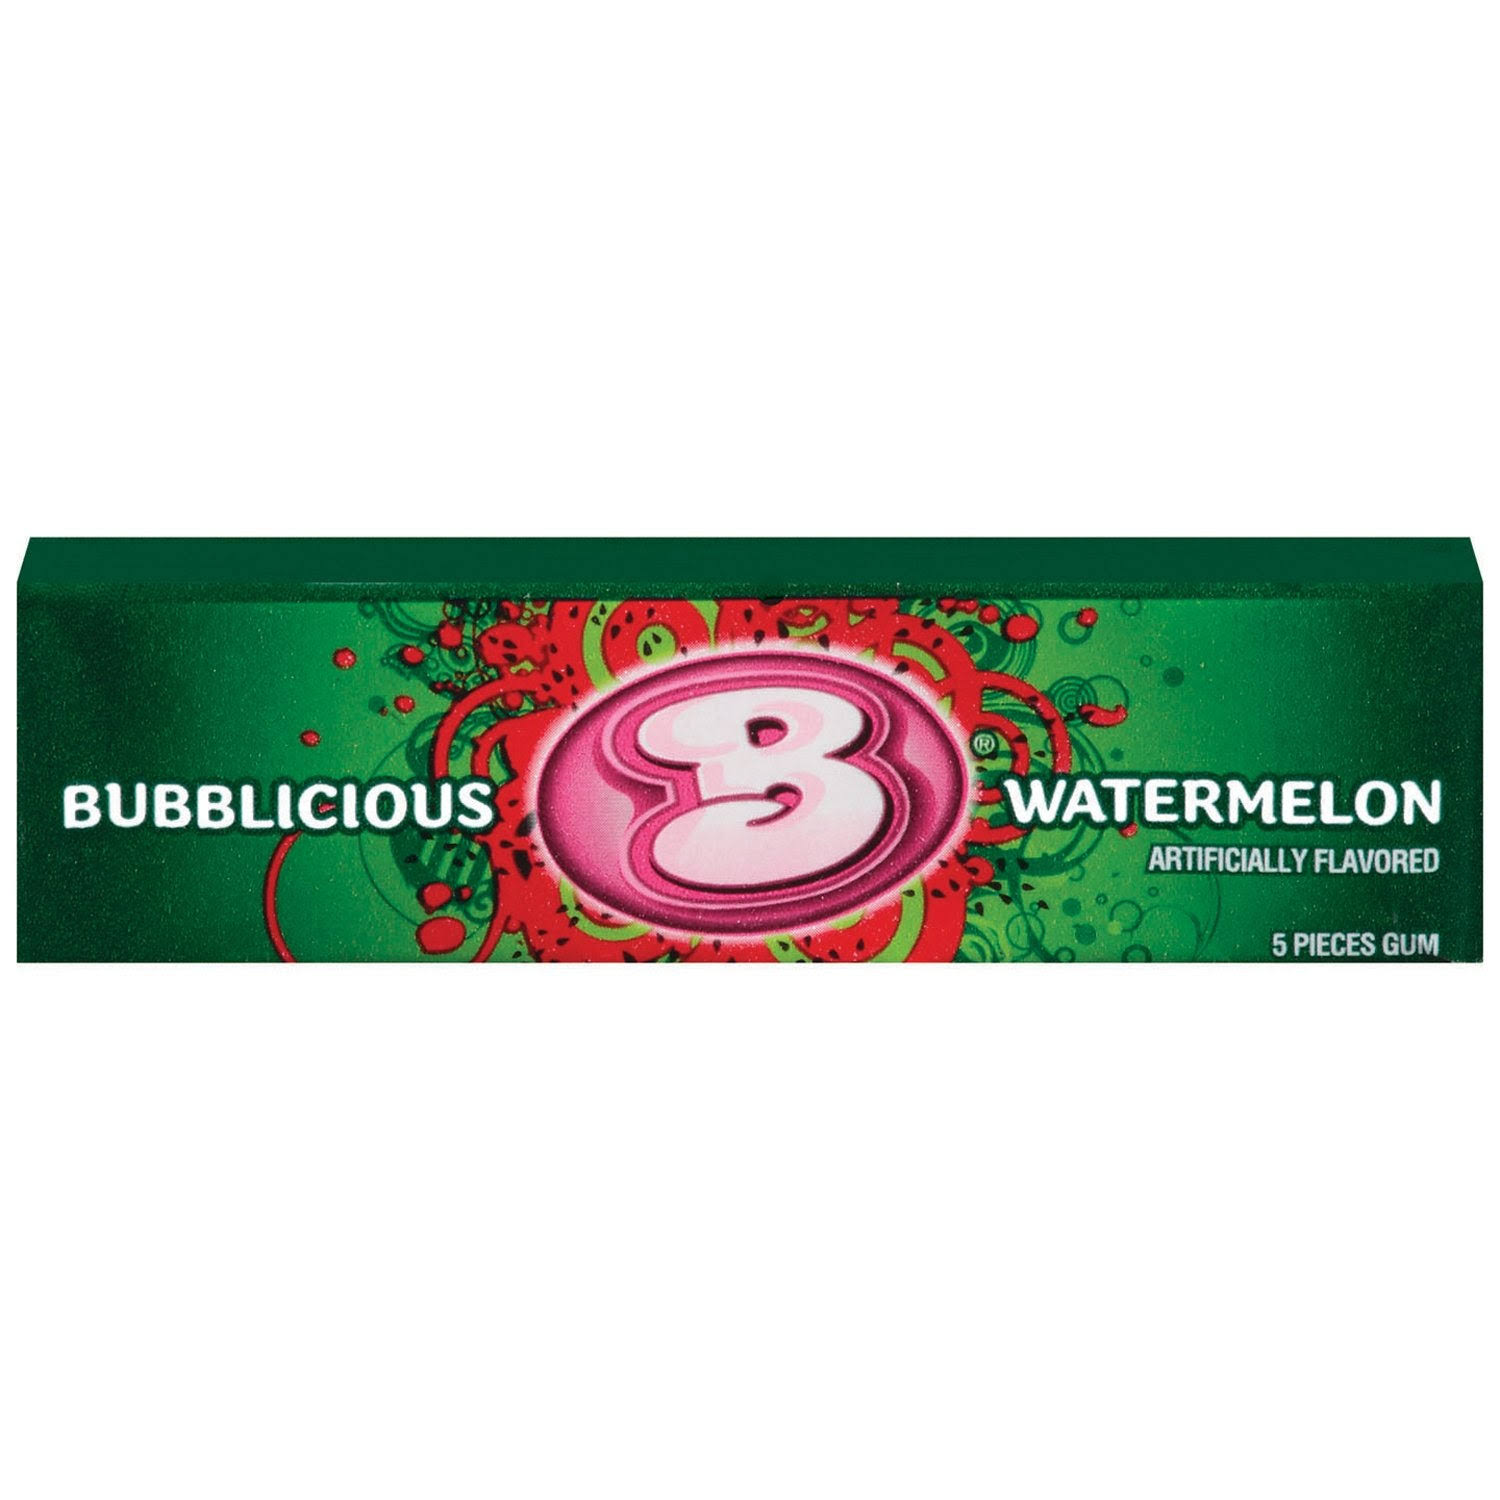 Bubblicious Bubble Gum - Watermelon, 5 Pieces